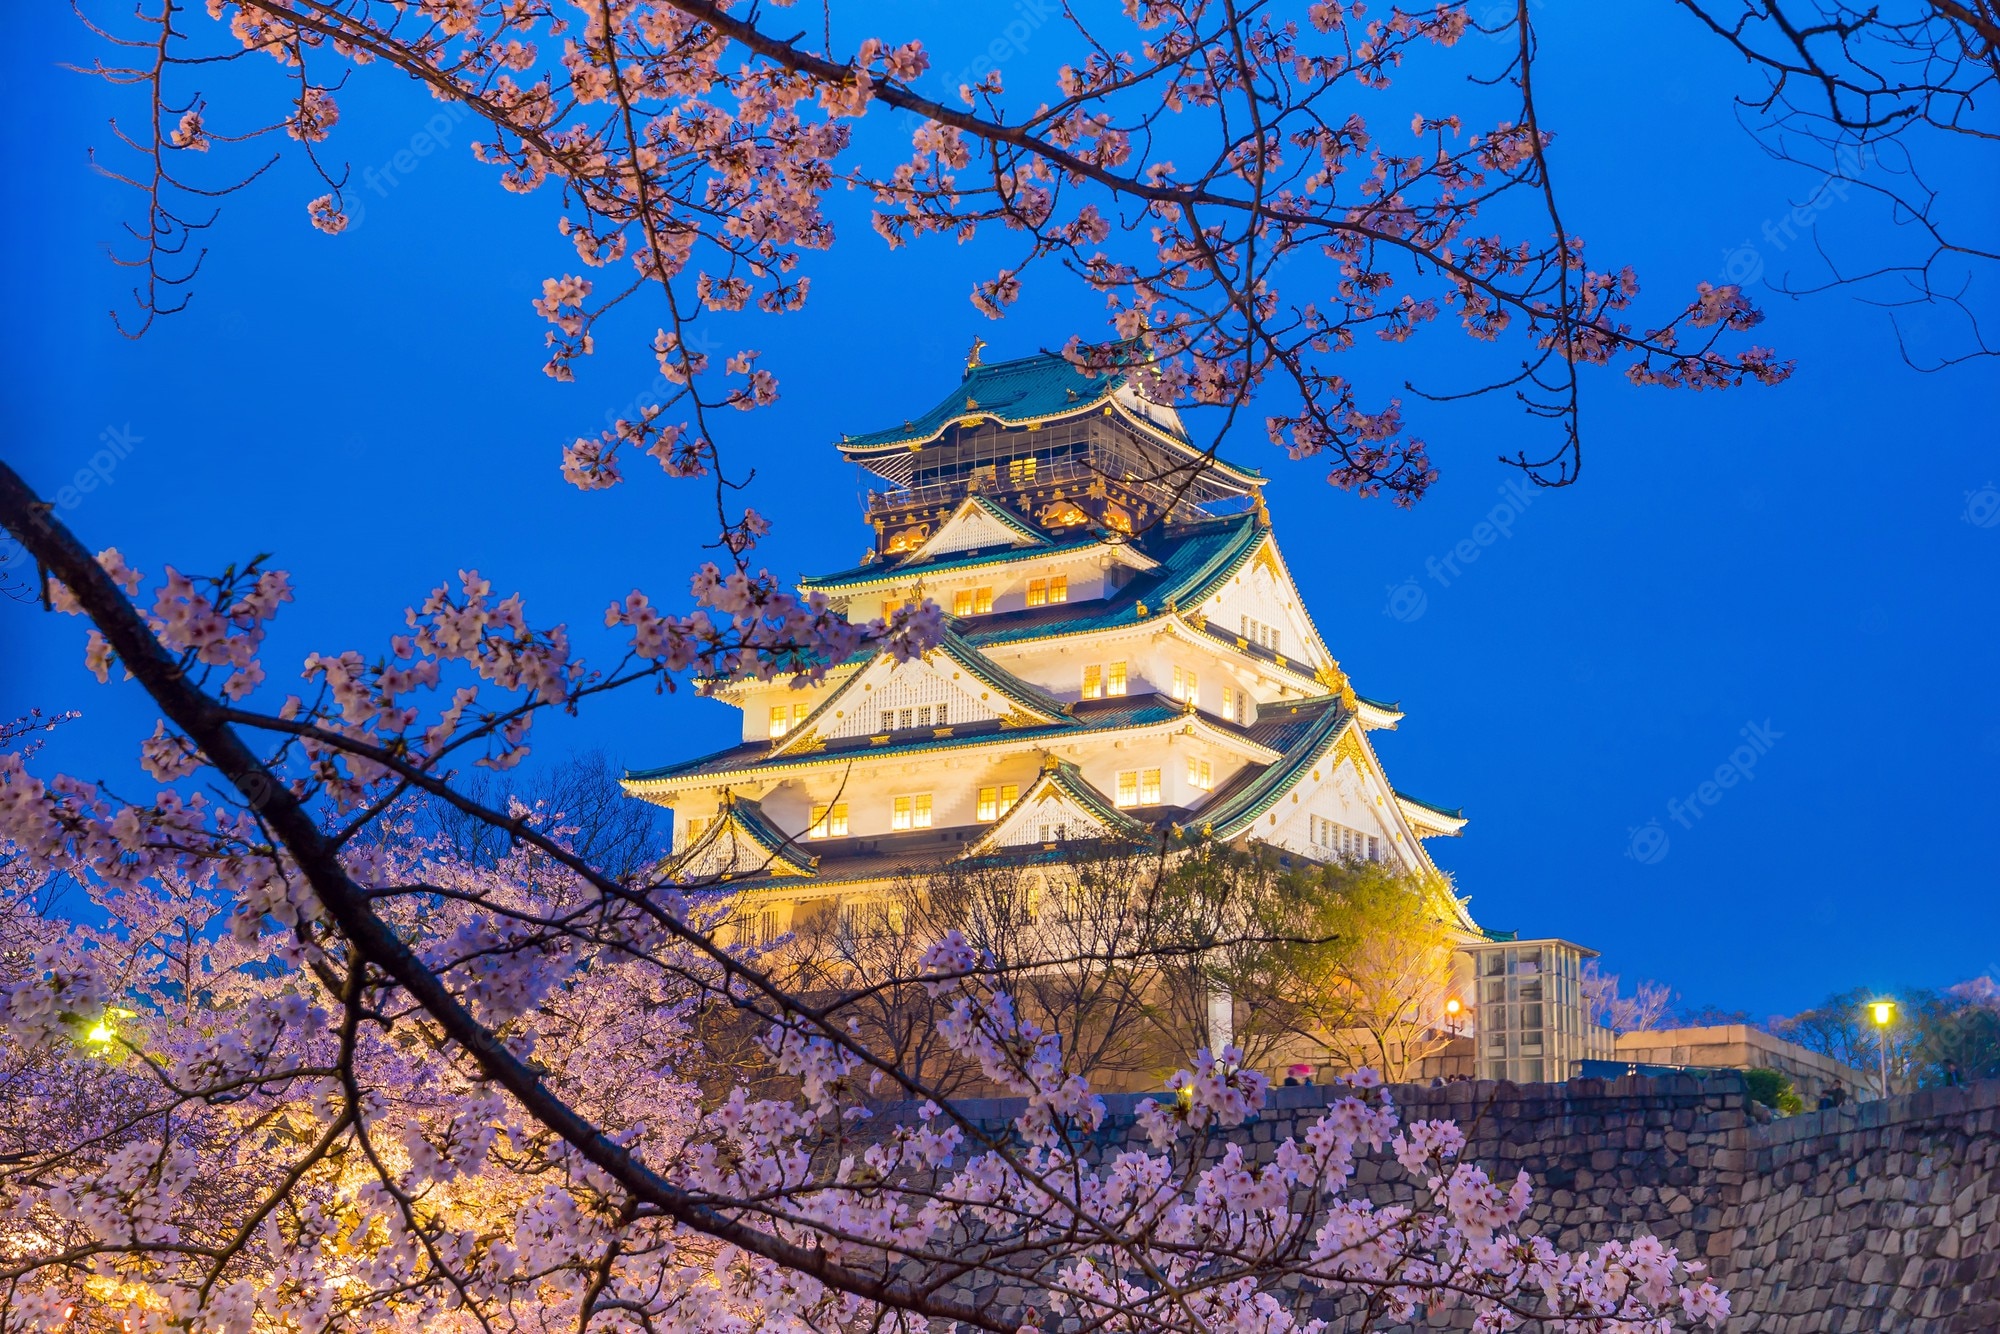 Osaka castle Image. Free Vectors, & PSD